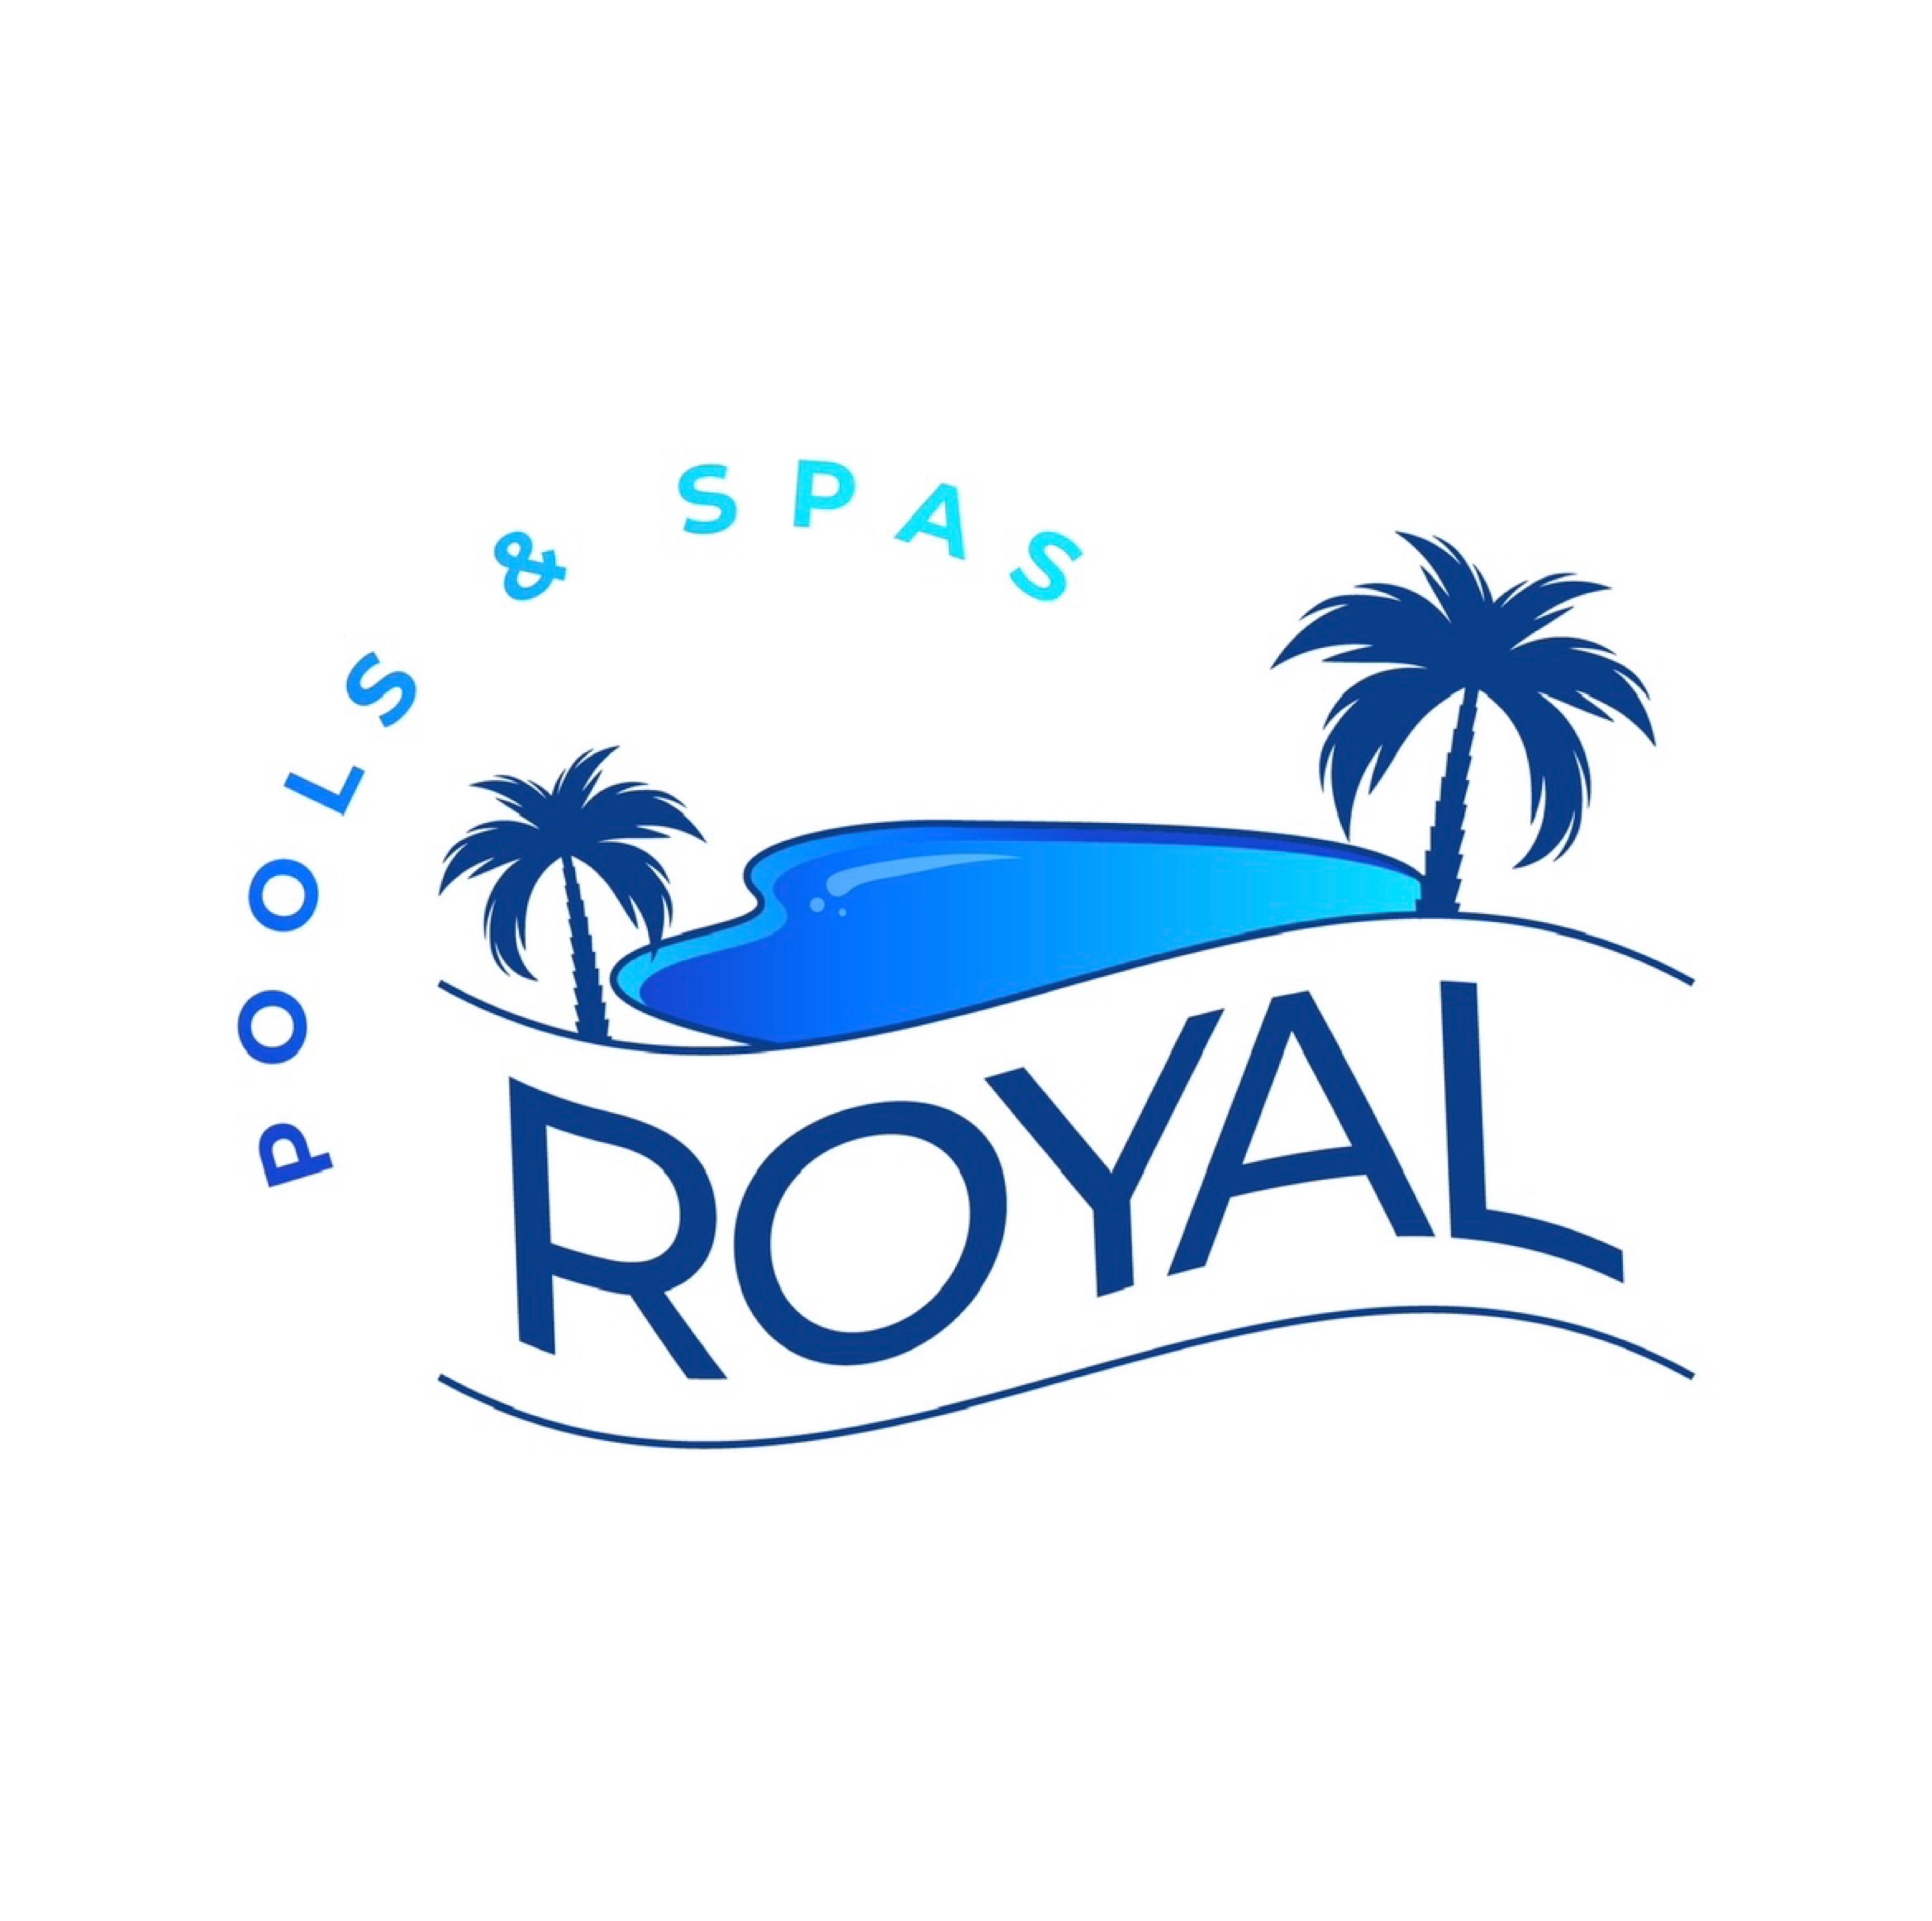 Royal Pools & Spas Logo